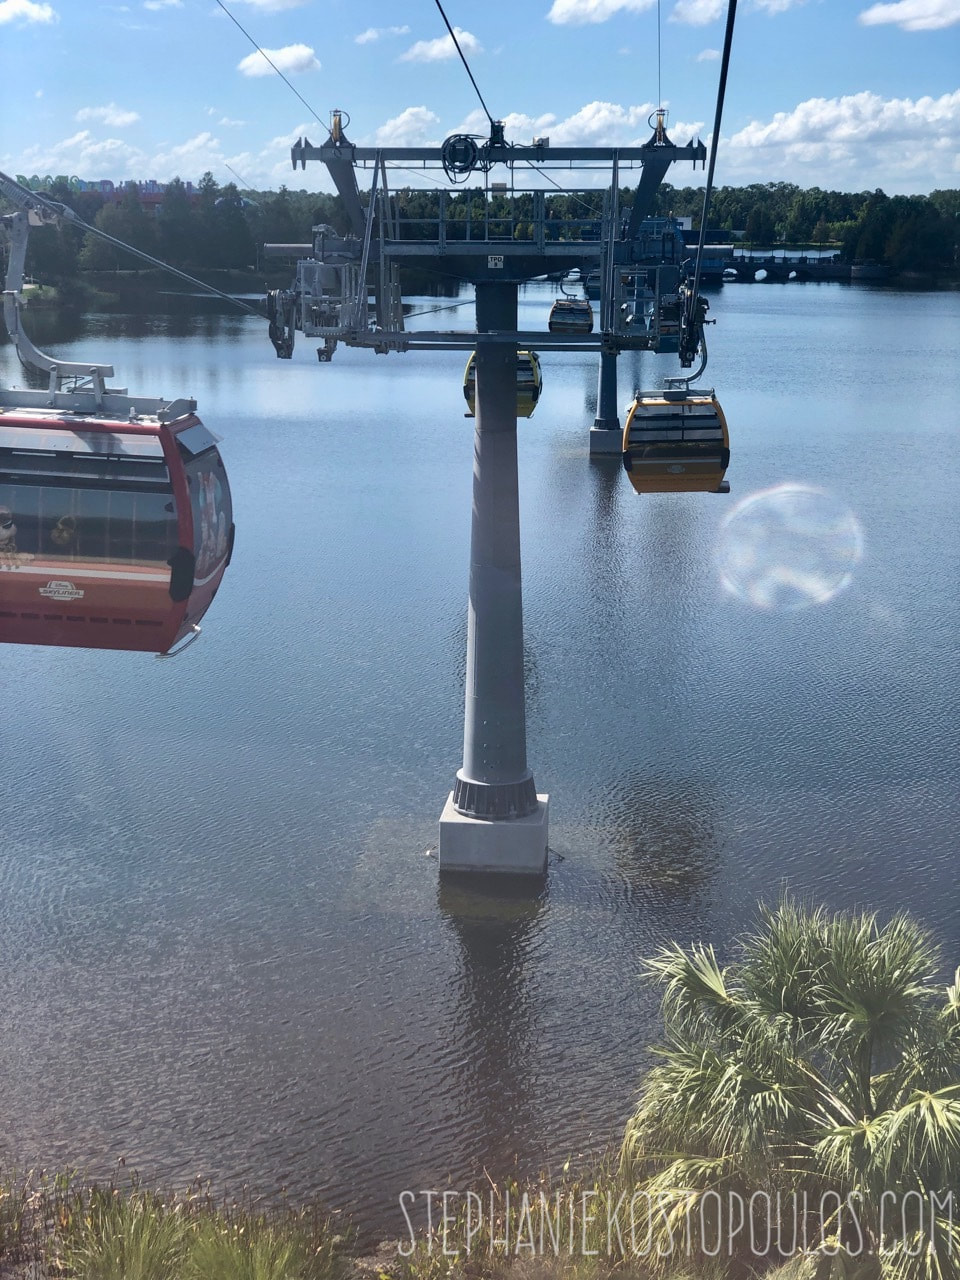 Disney Skyliner over water